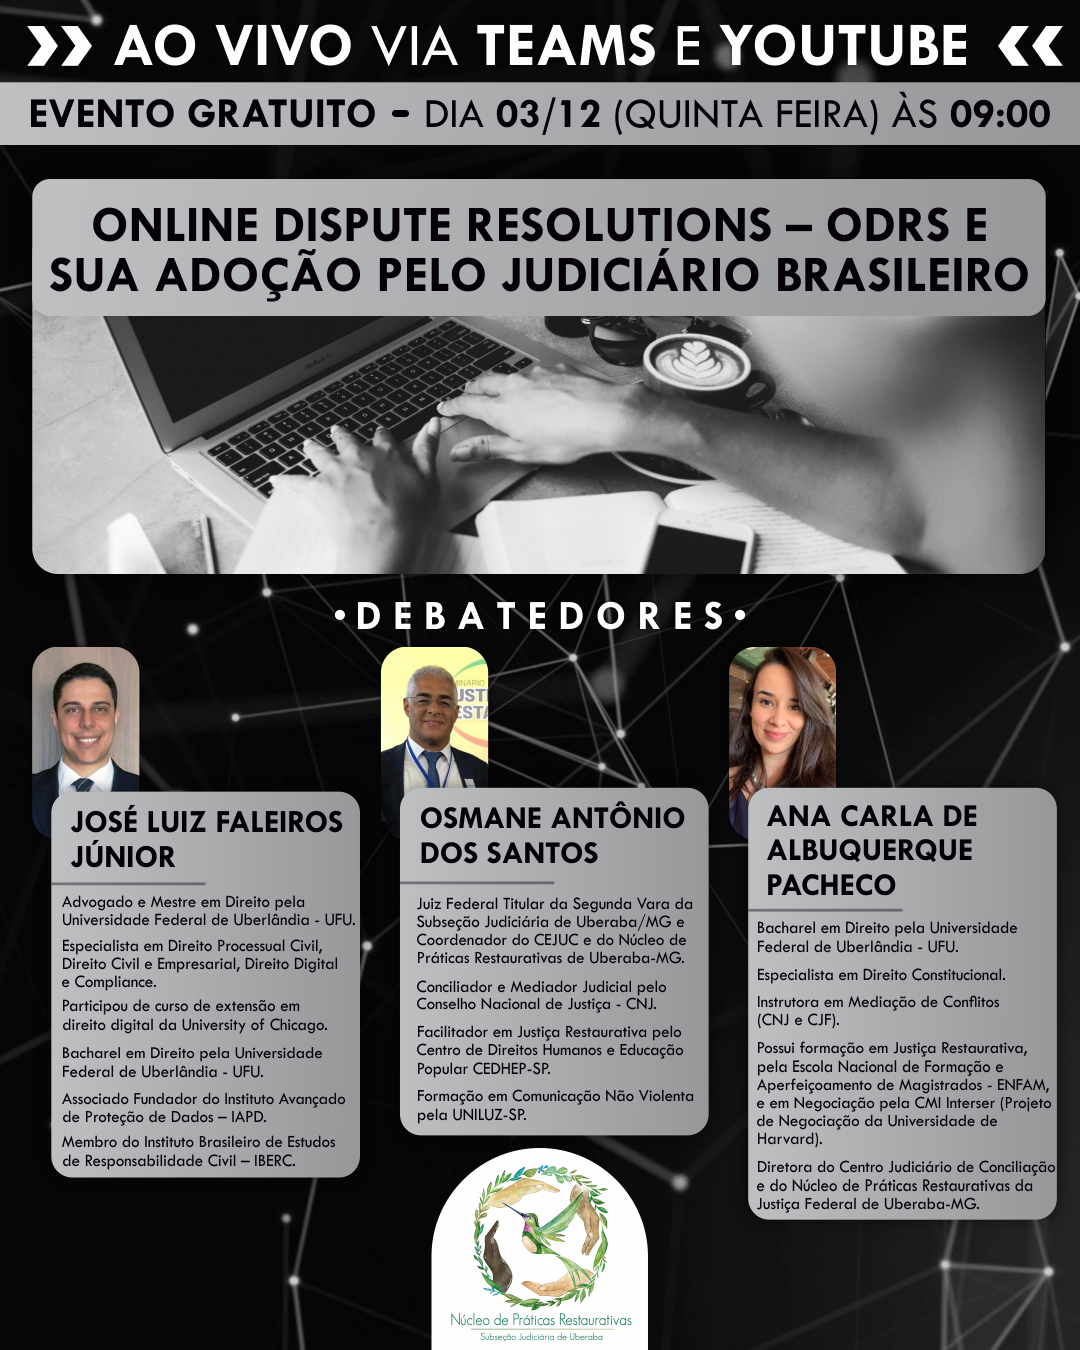 INSTITUCIONAL: Cejuc de Uberaba promove debate sobre o uso de plataformas virtuais pelo Judiciário